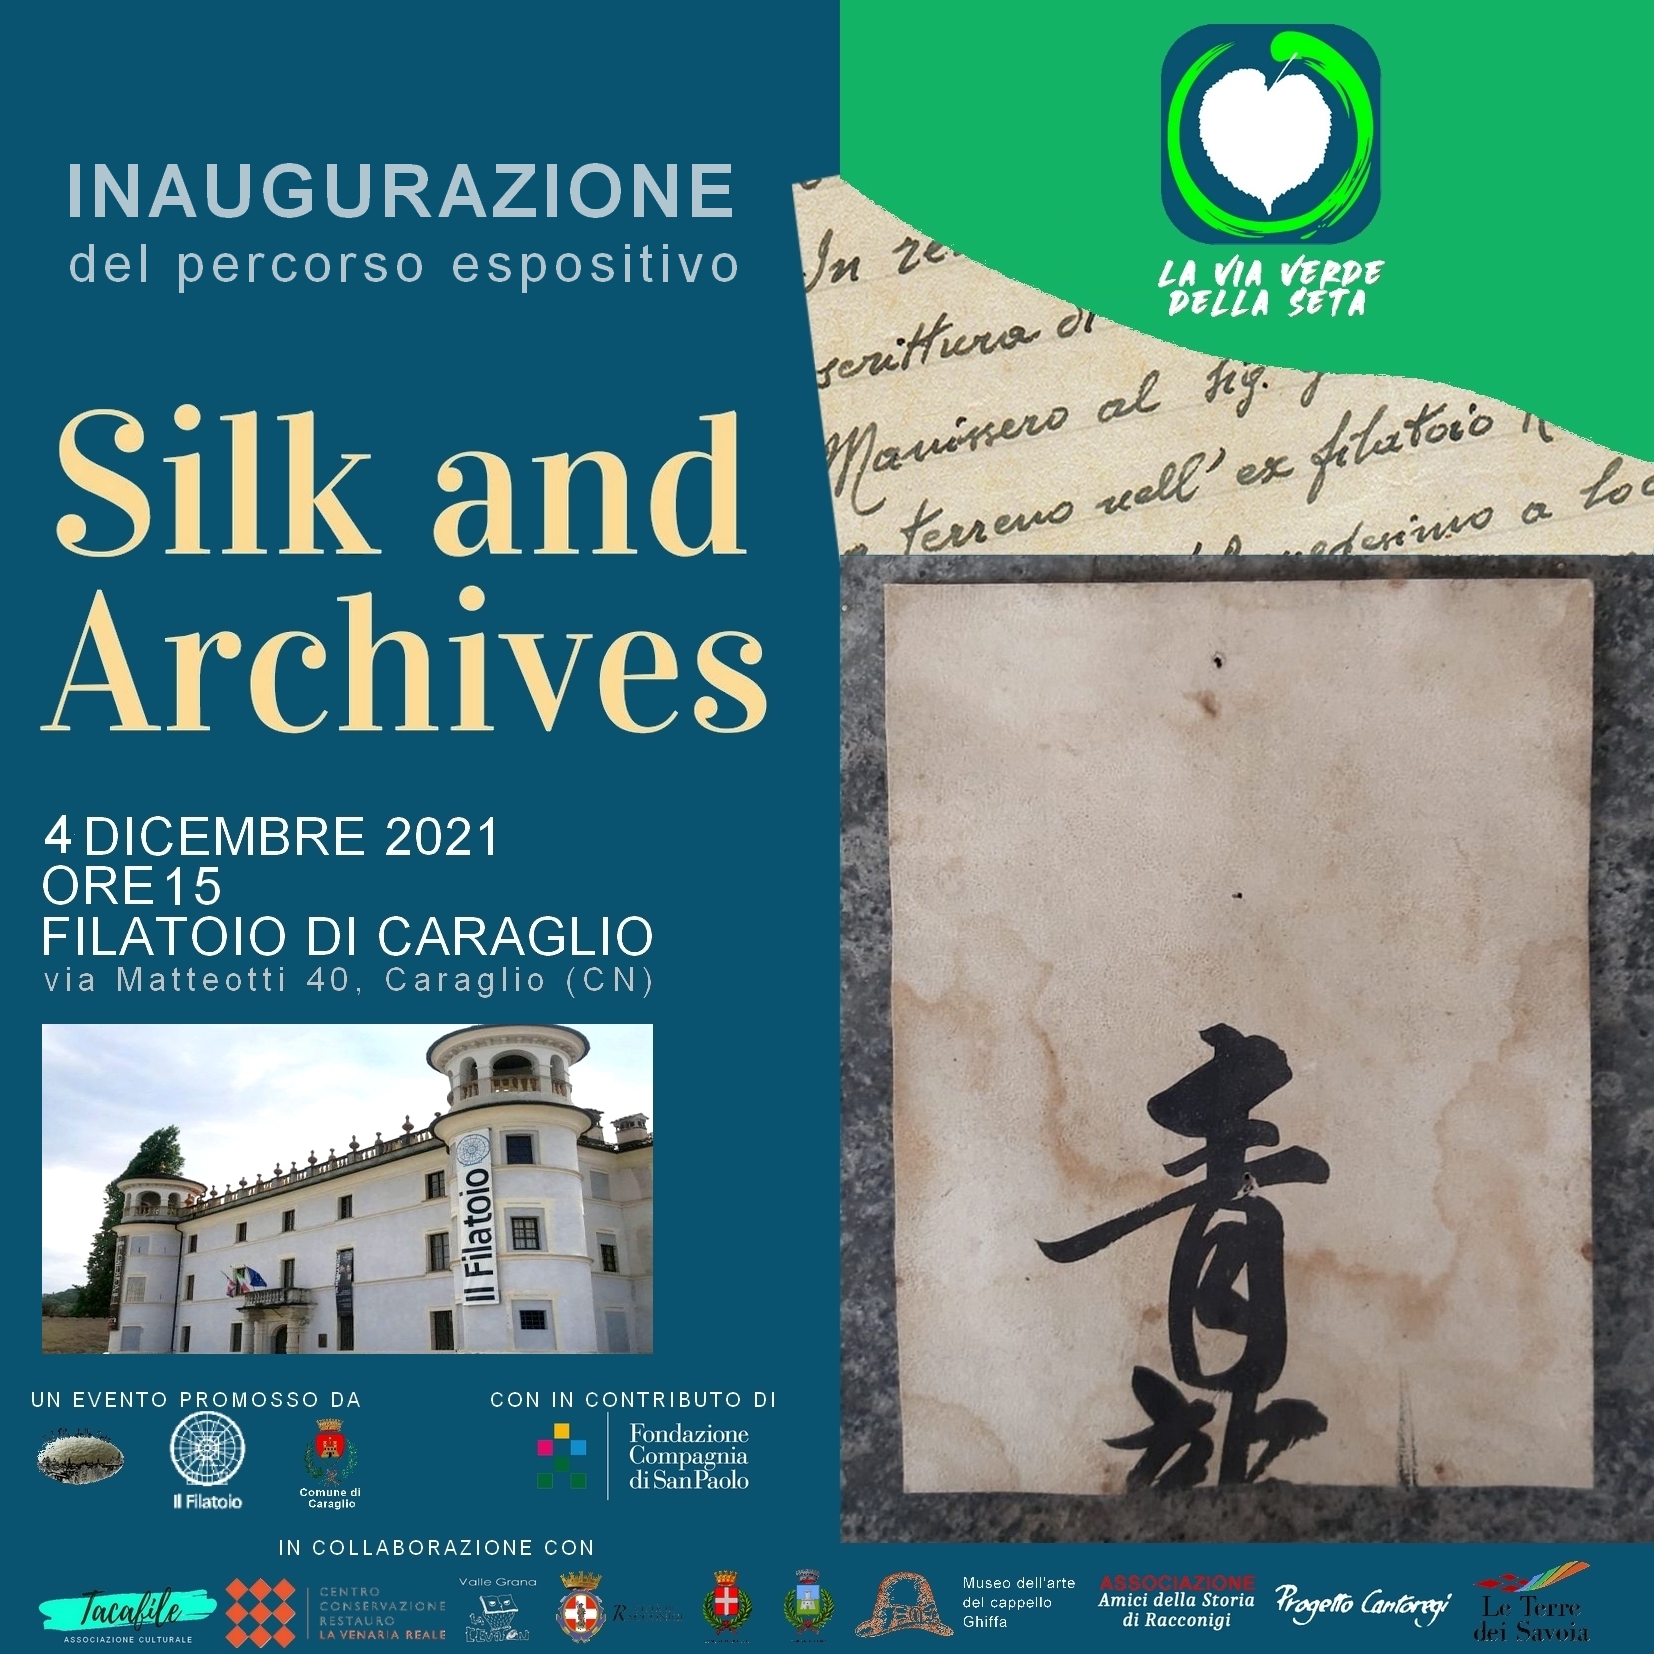 Inaugurazione-filatoio-silk-and-archives